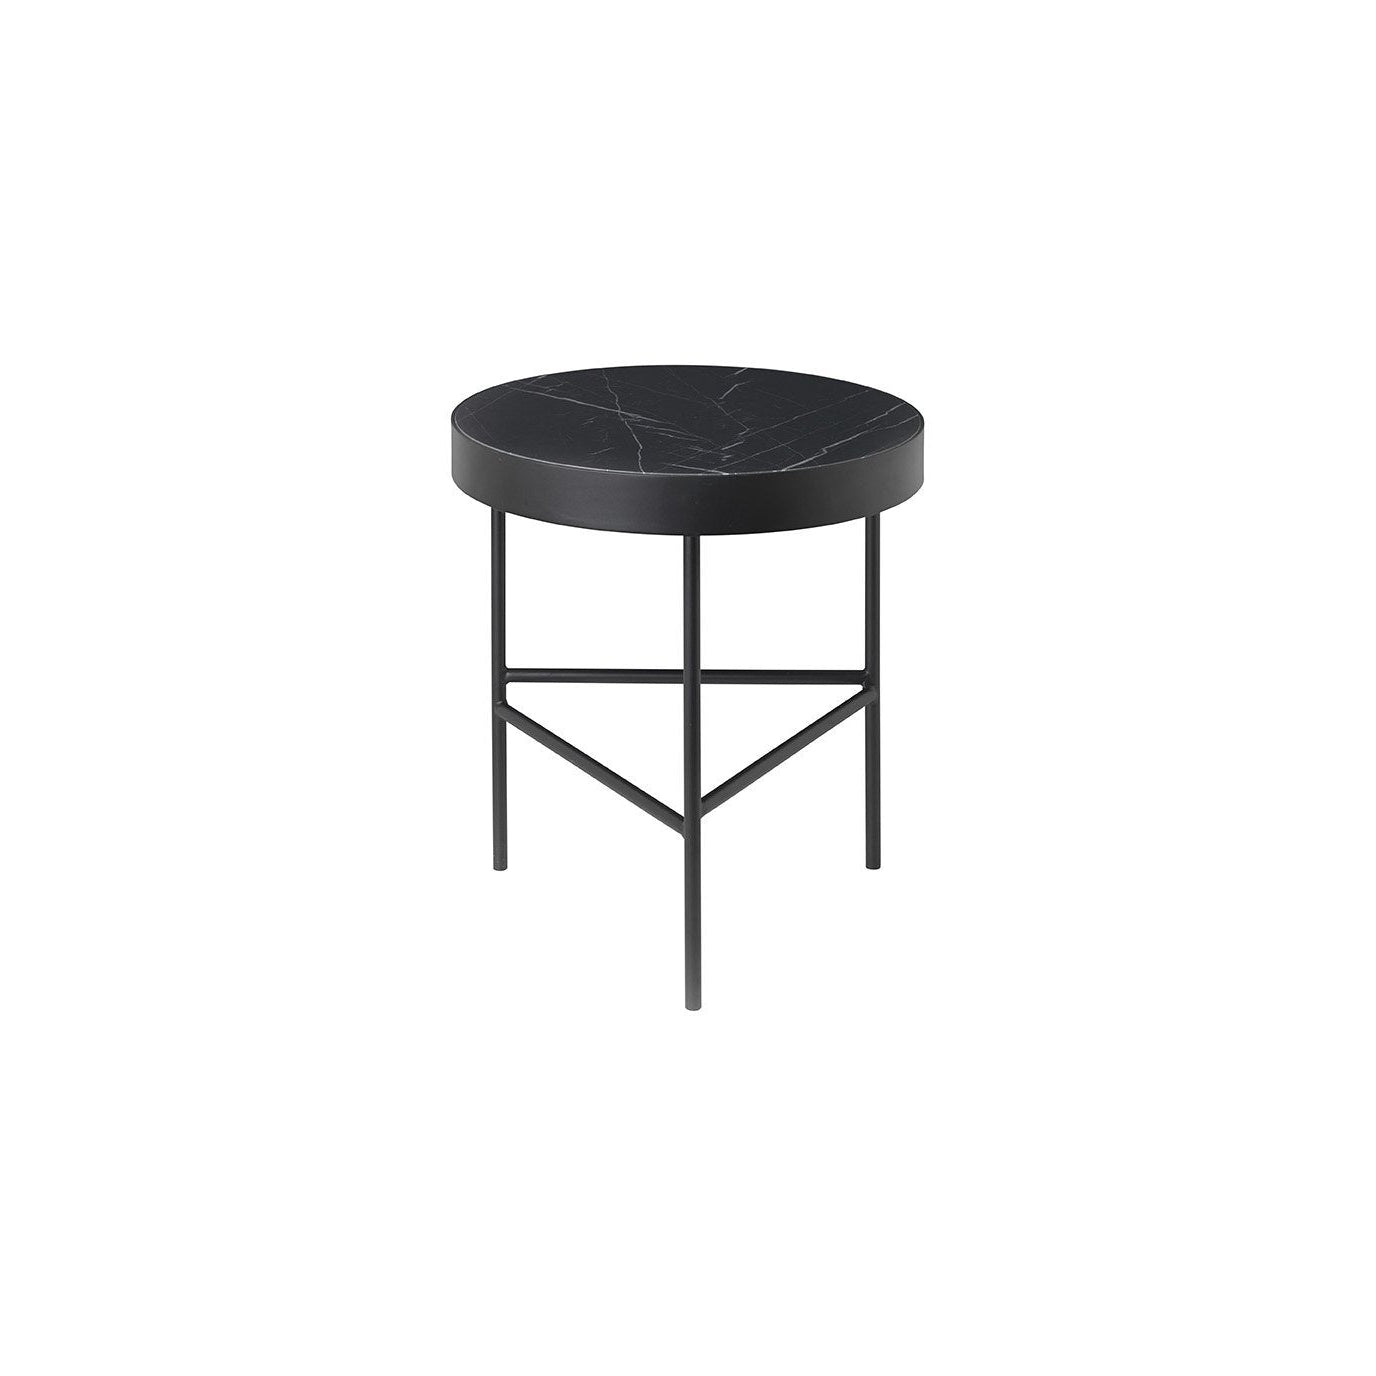 Ferm Living Marmeren tafel zwart marquina, Ø40 cm